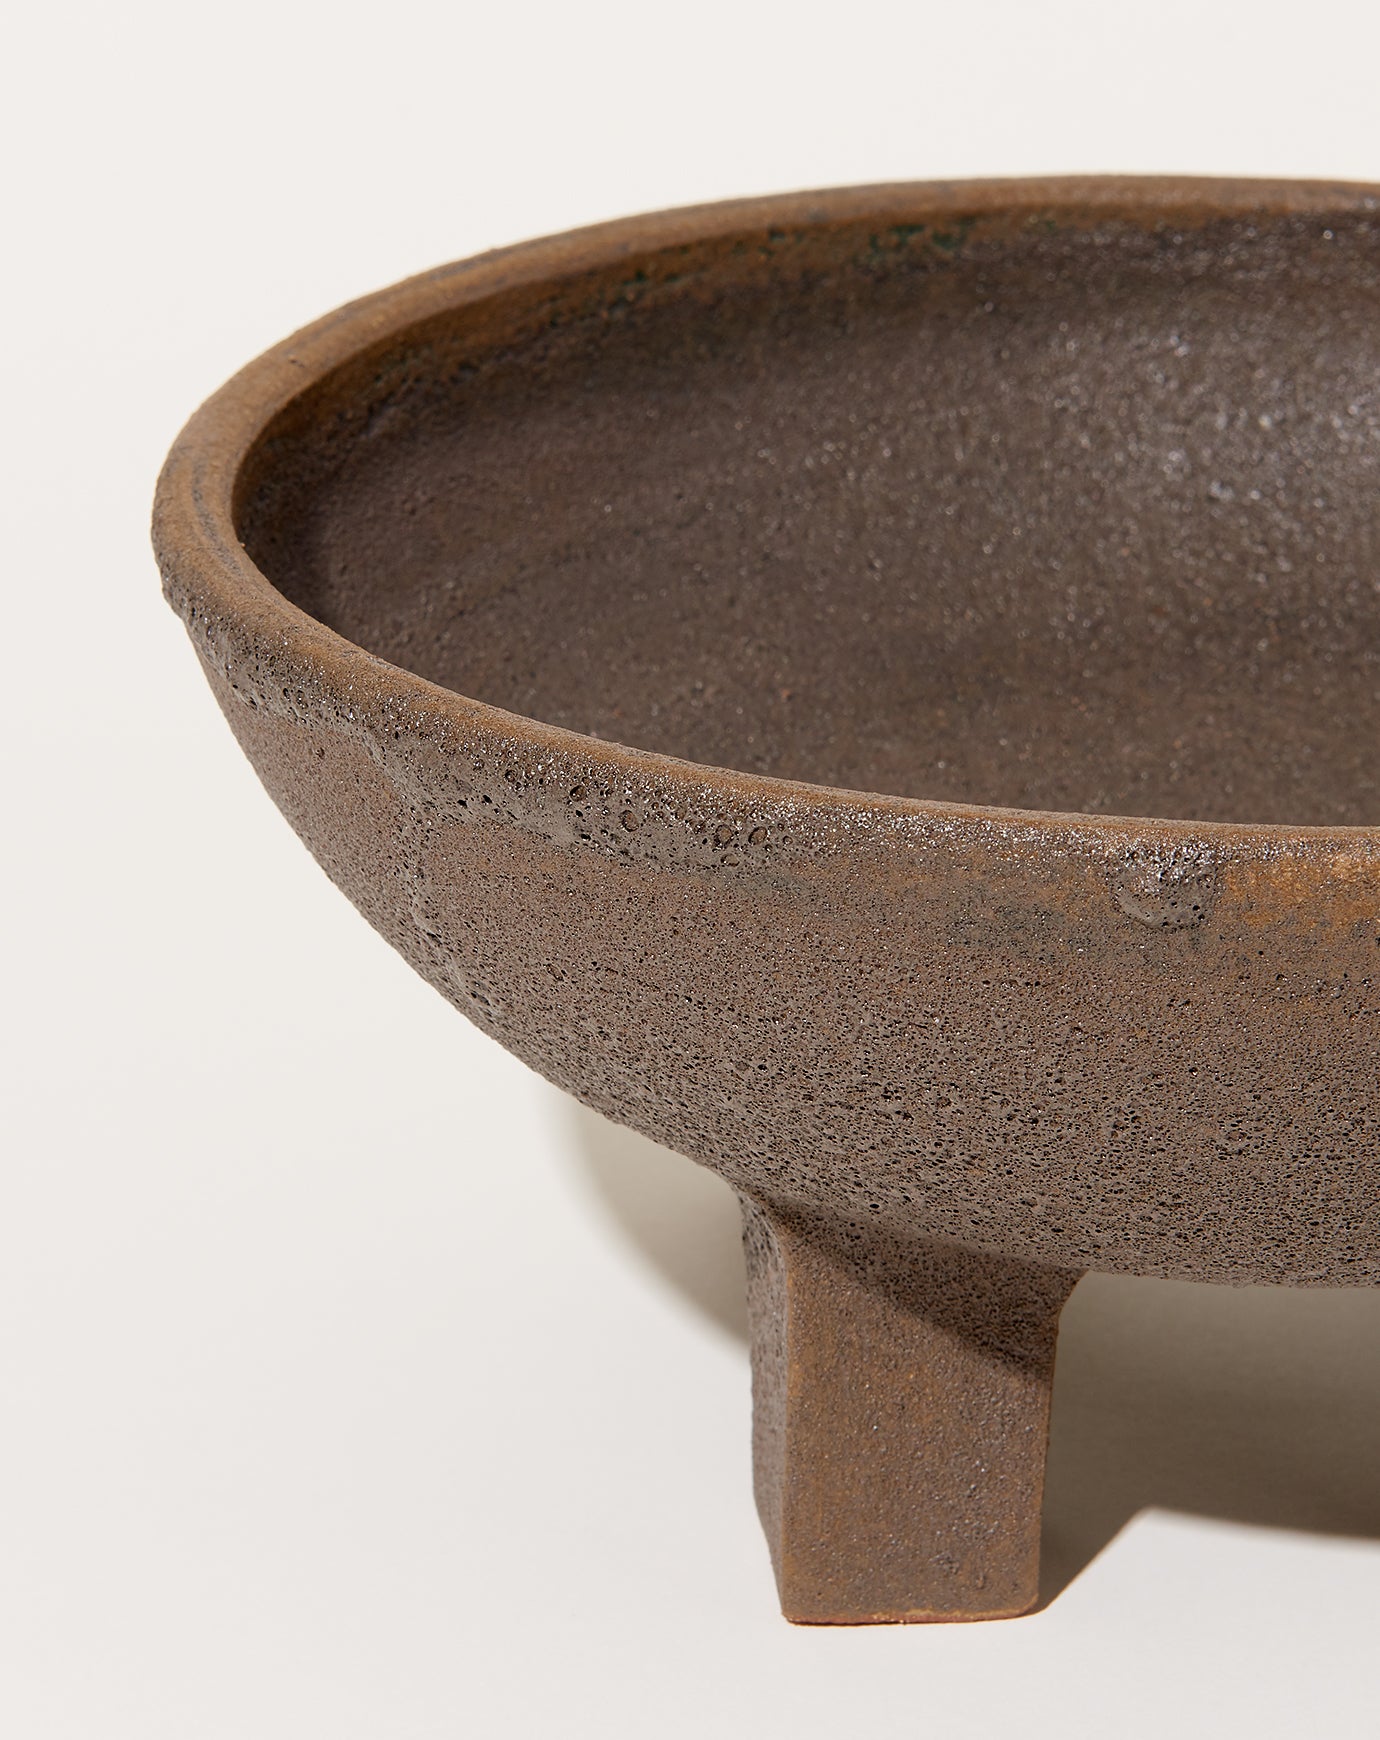 Nur Ceramics Large Ritual Bowl in Volcanic Black